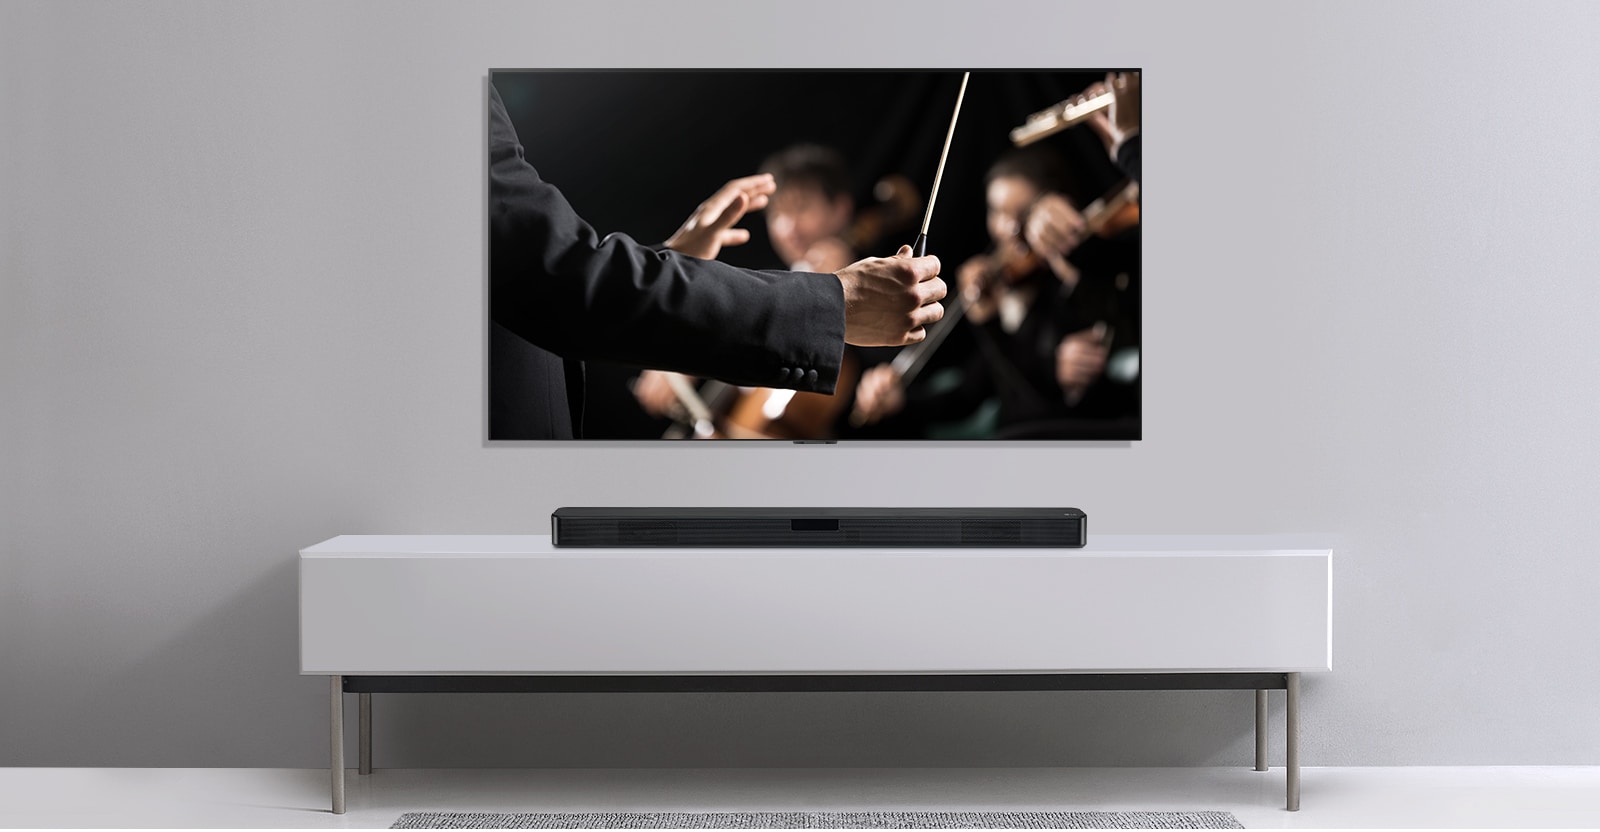 ทีวีปรากฏบนผนังสีเทา และ LG Soundbar อยู่ด้านล่างชั้นวางสีเทา ทีวีแสดงภาพวาทยากรที่กำลังนำวงออเคสตร้า